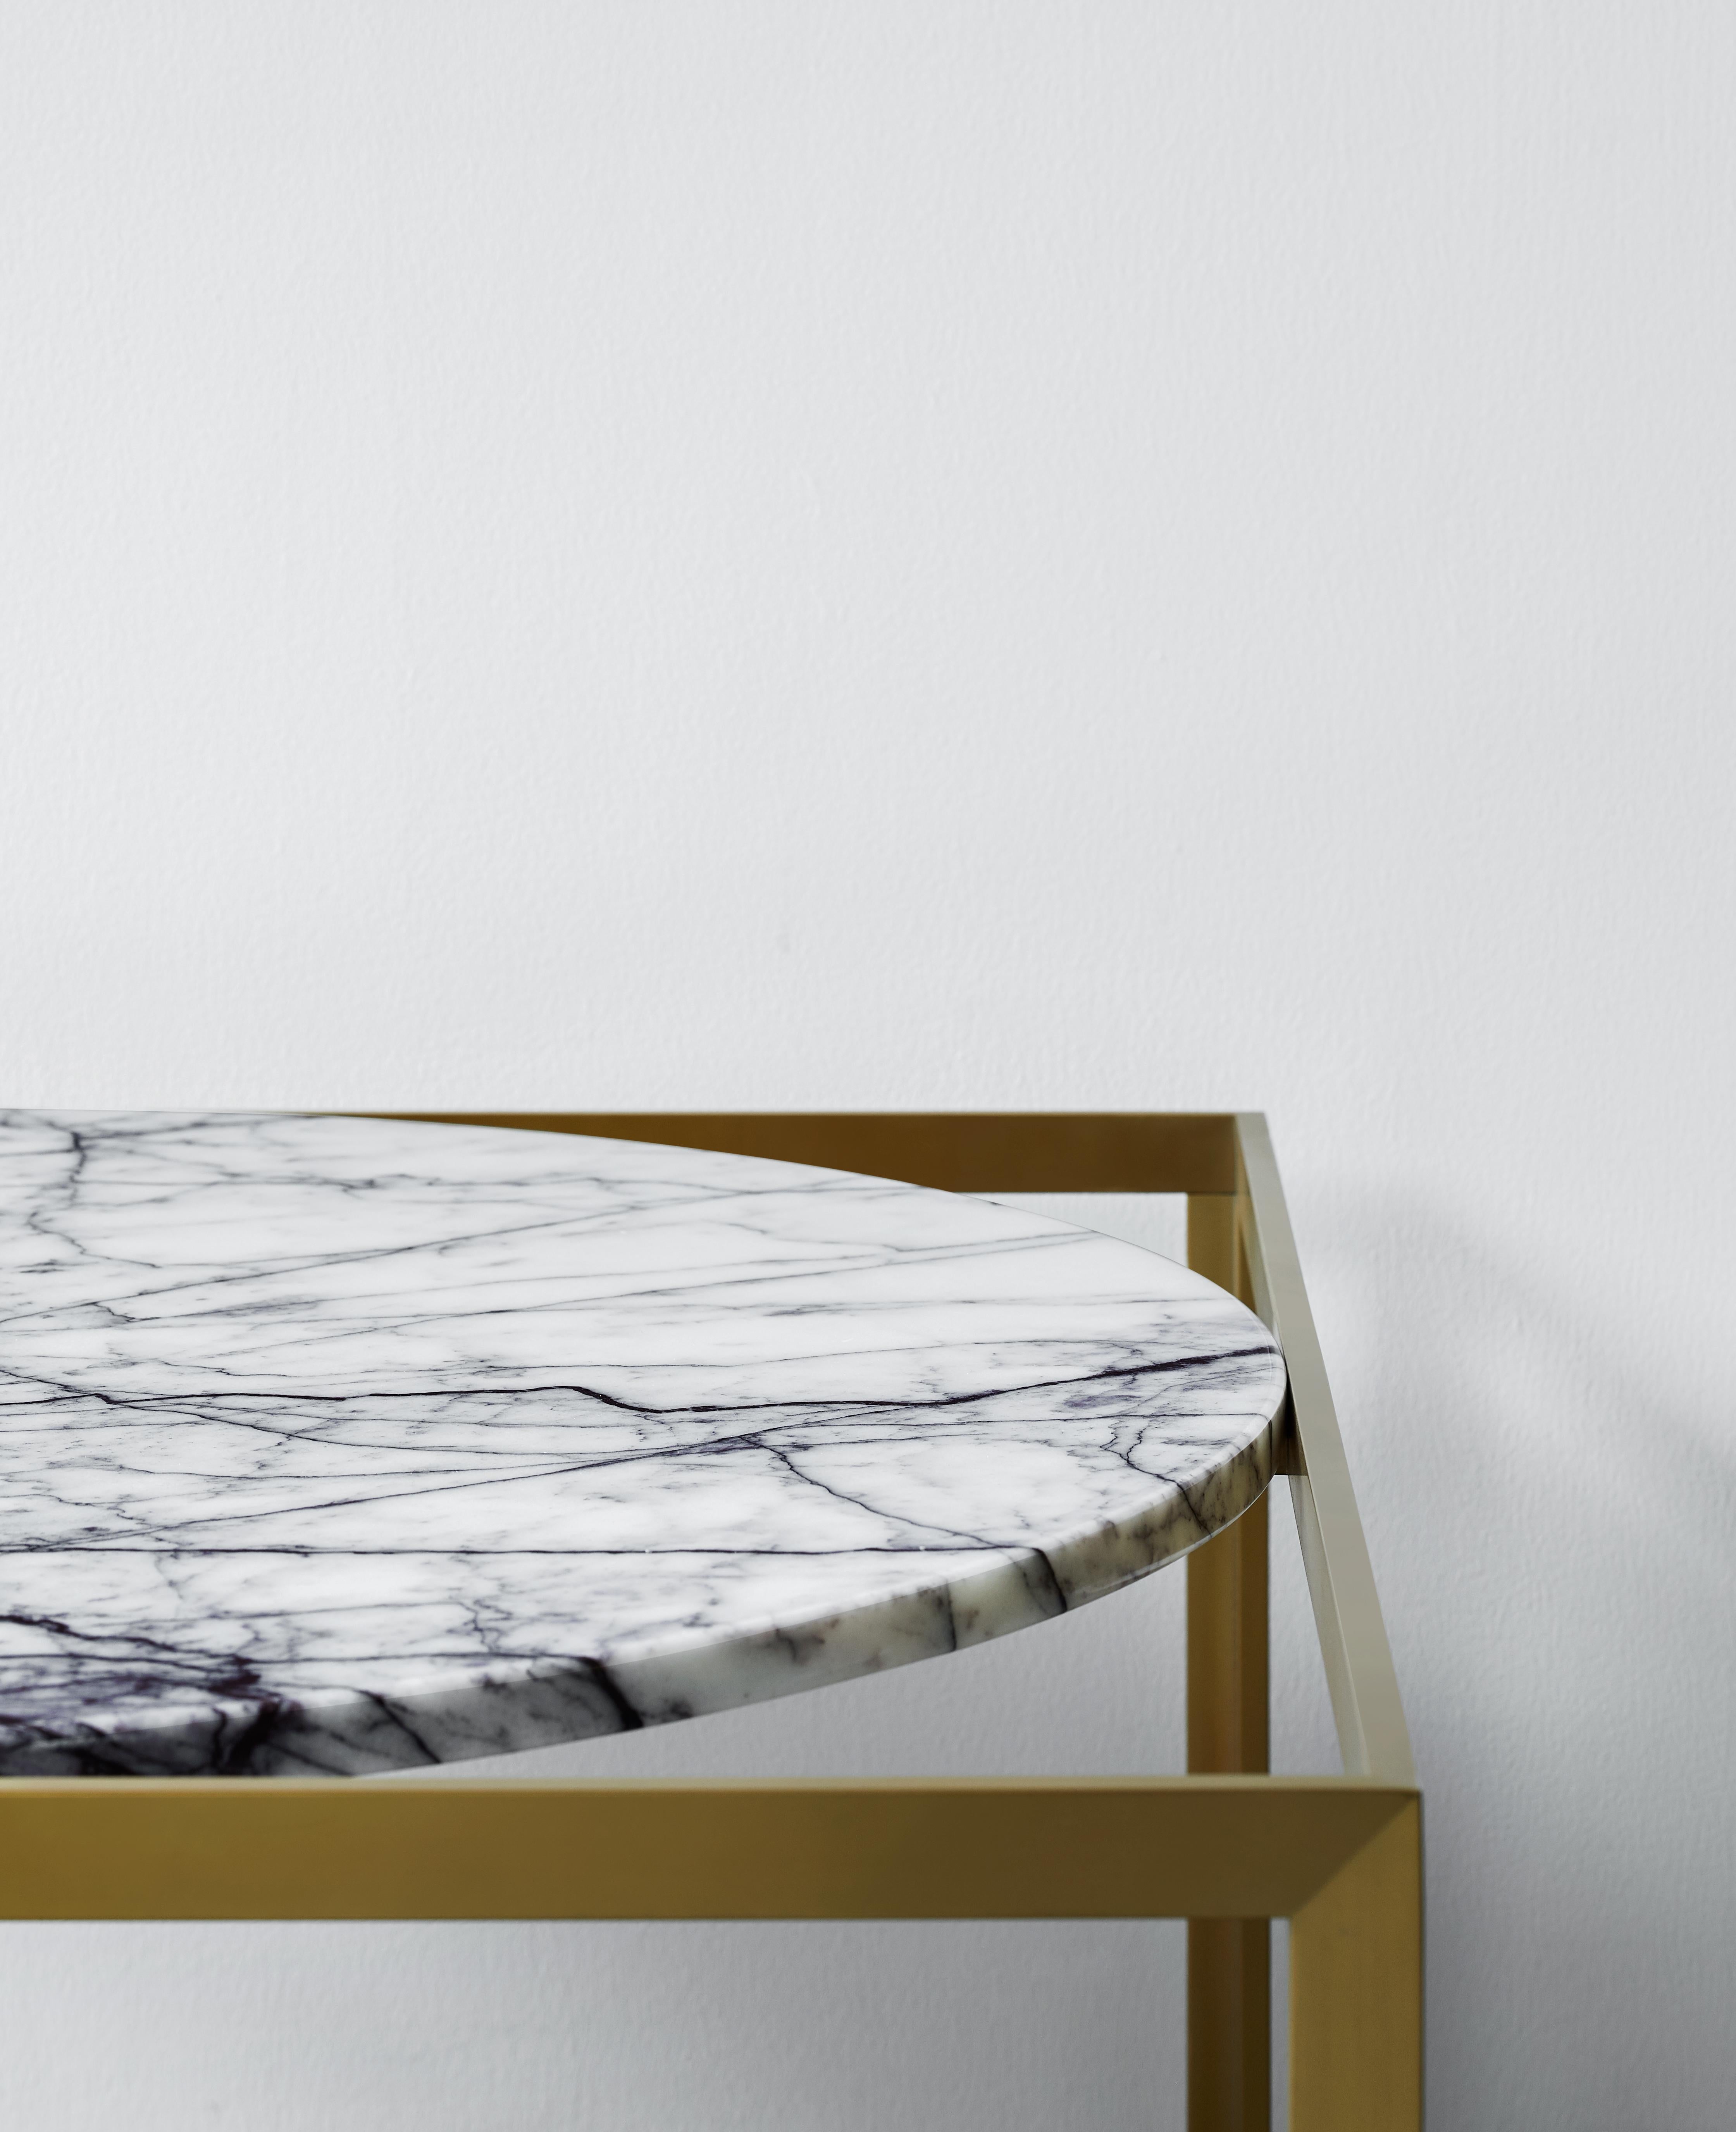 Polished NORDST GAARD Side Table, Italian Black Eagle Marble, Danish Modern Design For Sale